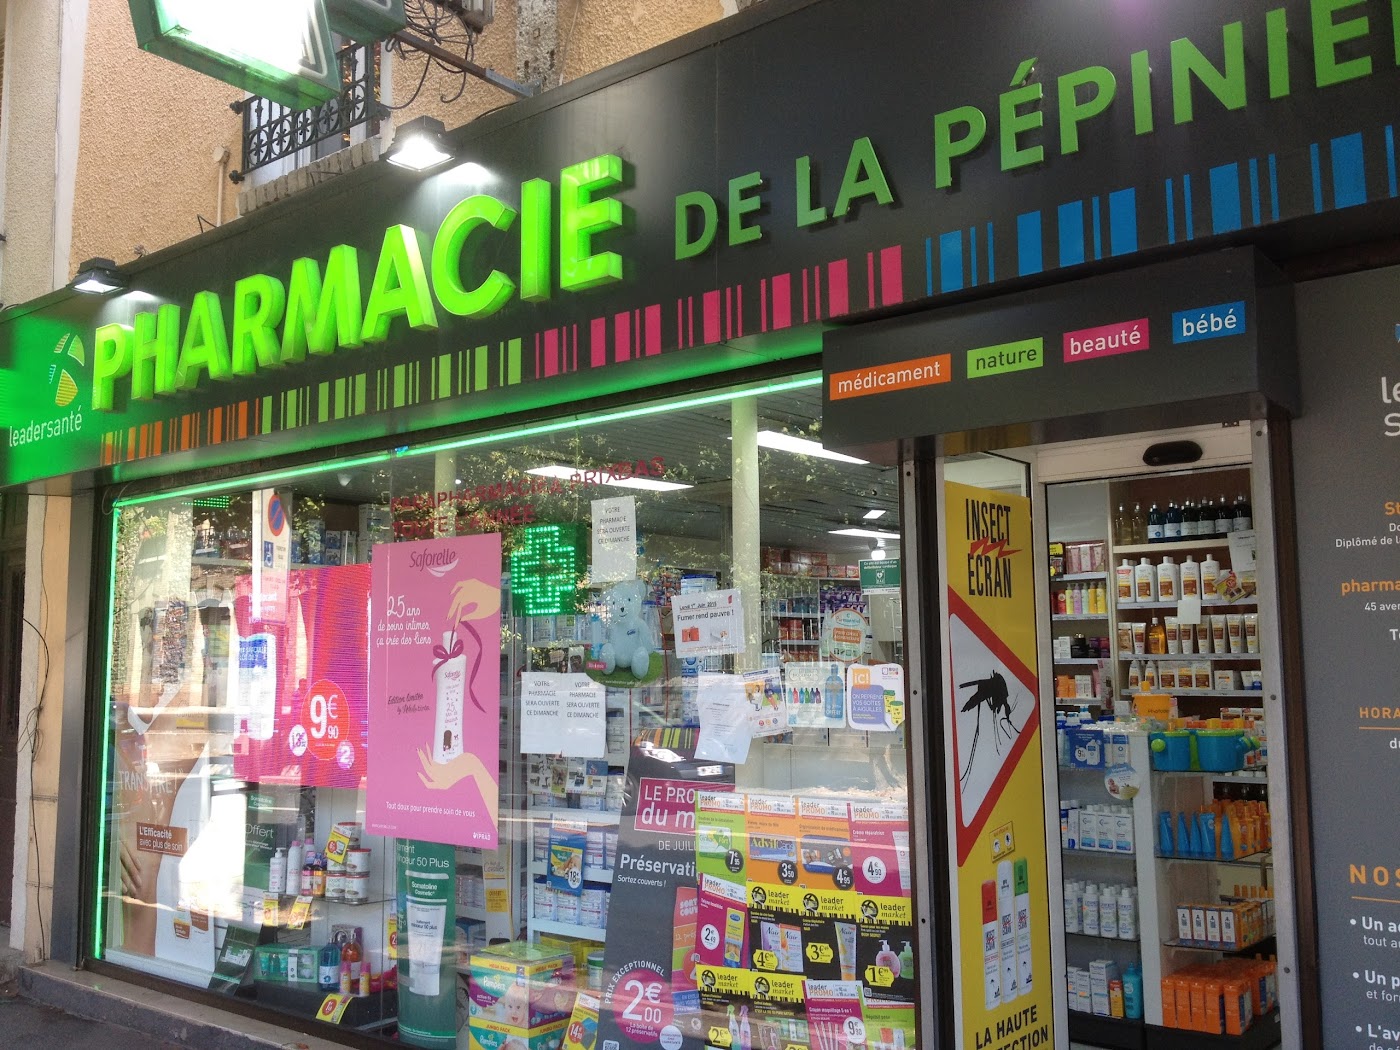 Pharmacie de la Pépinière GROUPE LEADER SANTE